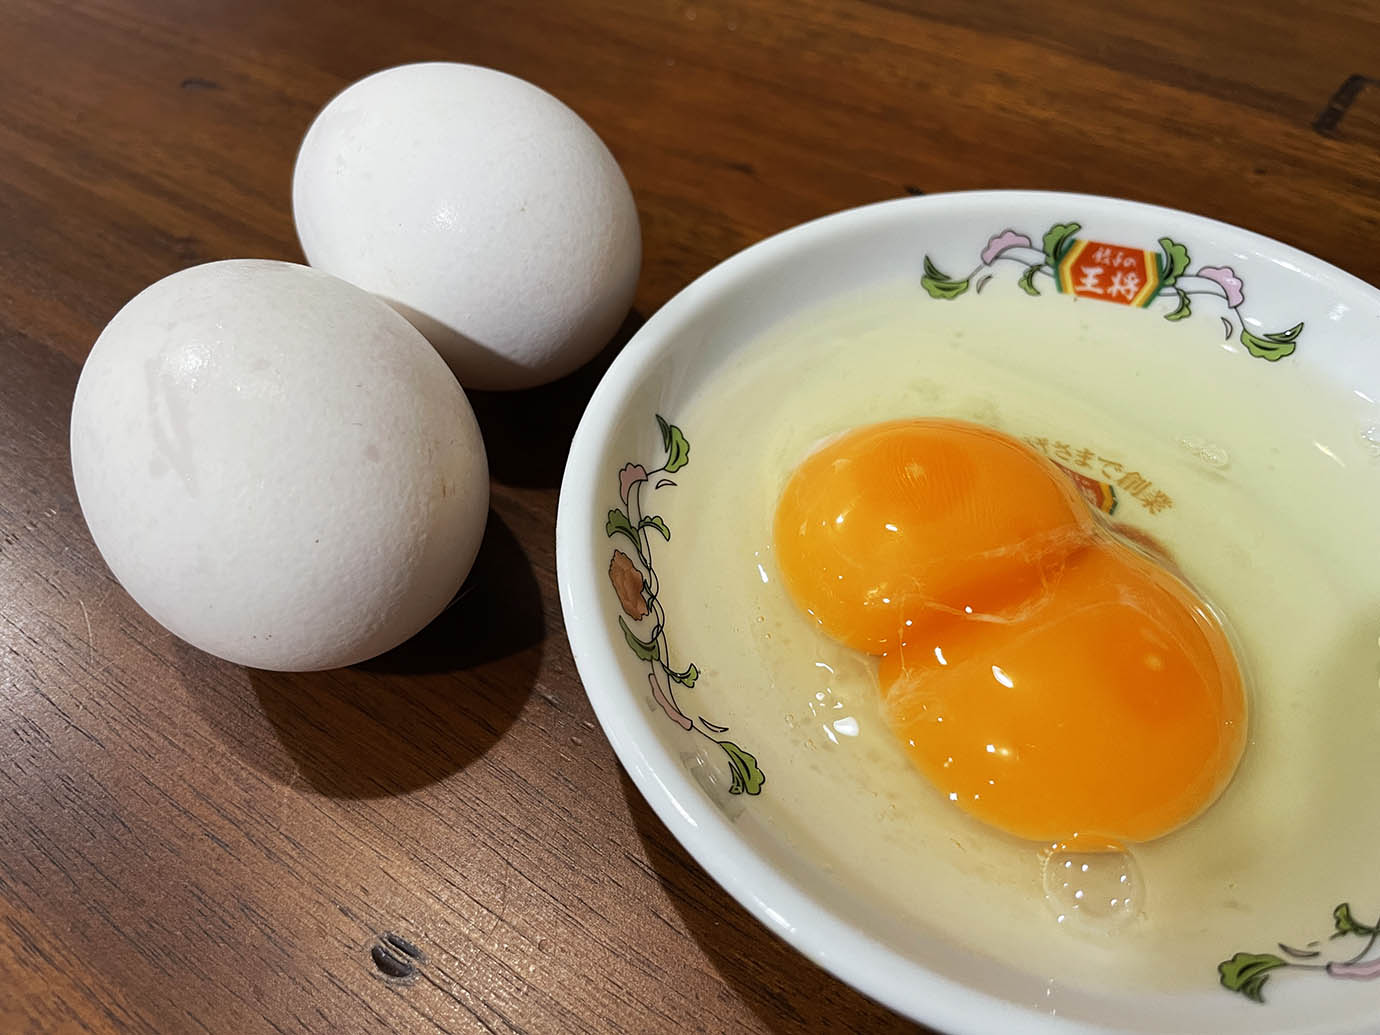 【異世界グルメ】黄身が2つ入っている生卵が不思議でウマイ件 / 知多半島農場直送の二黄卵・幸せを呼ぶ卵「200個に1個の珍しさ」